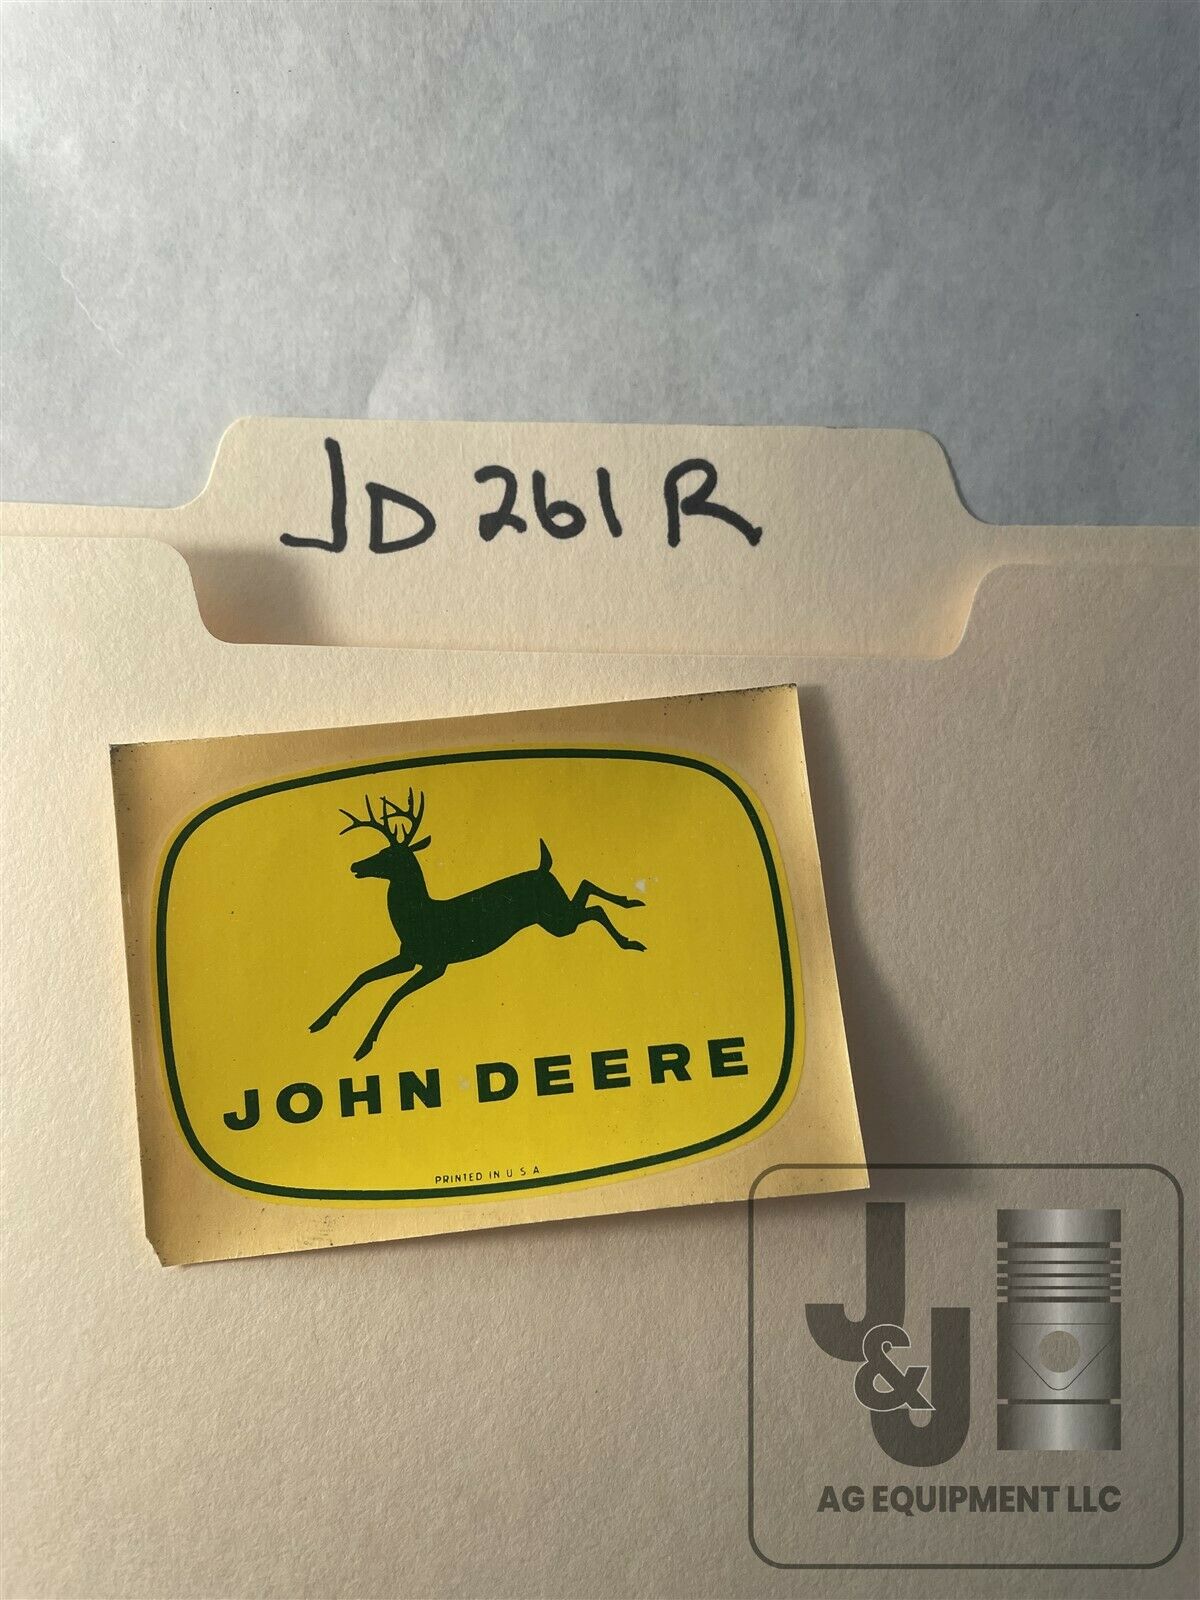 NOS John Deere Tractor Logo Decal 2-18" X 3" JD261R